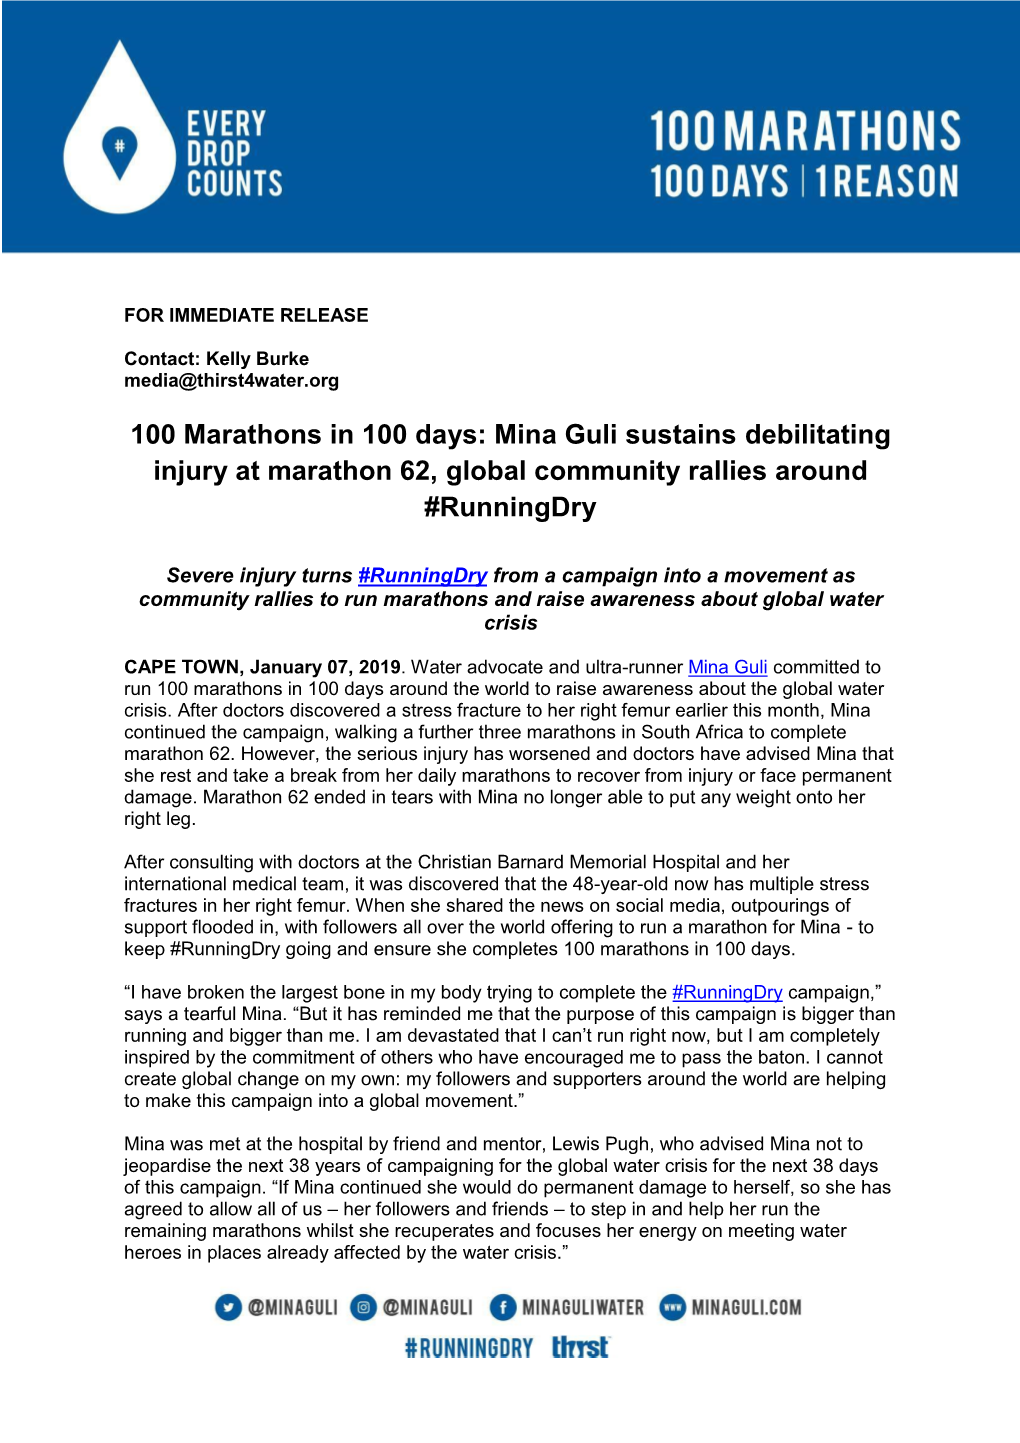 Mina Guli Sustains Debilitating Injury at Marathon 62, Global Community Rallies Around #Runningdry